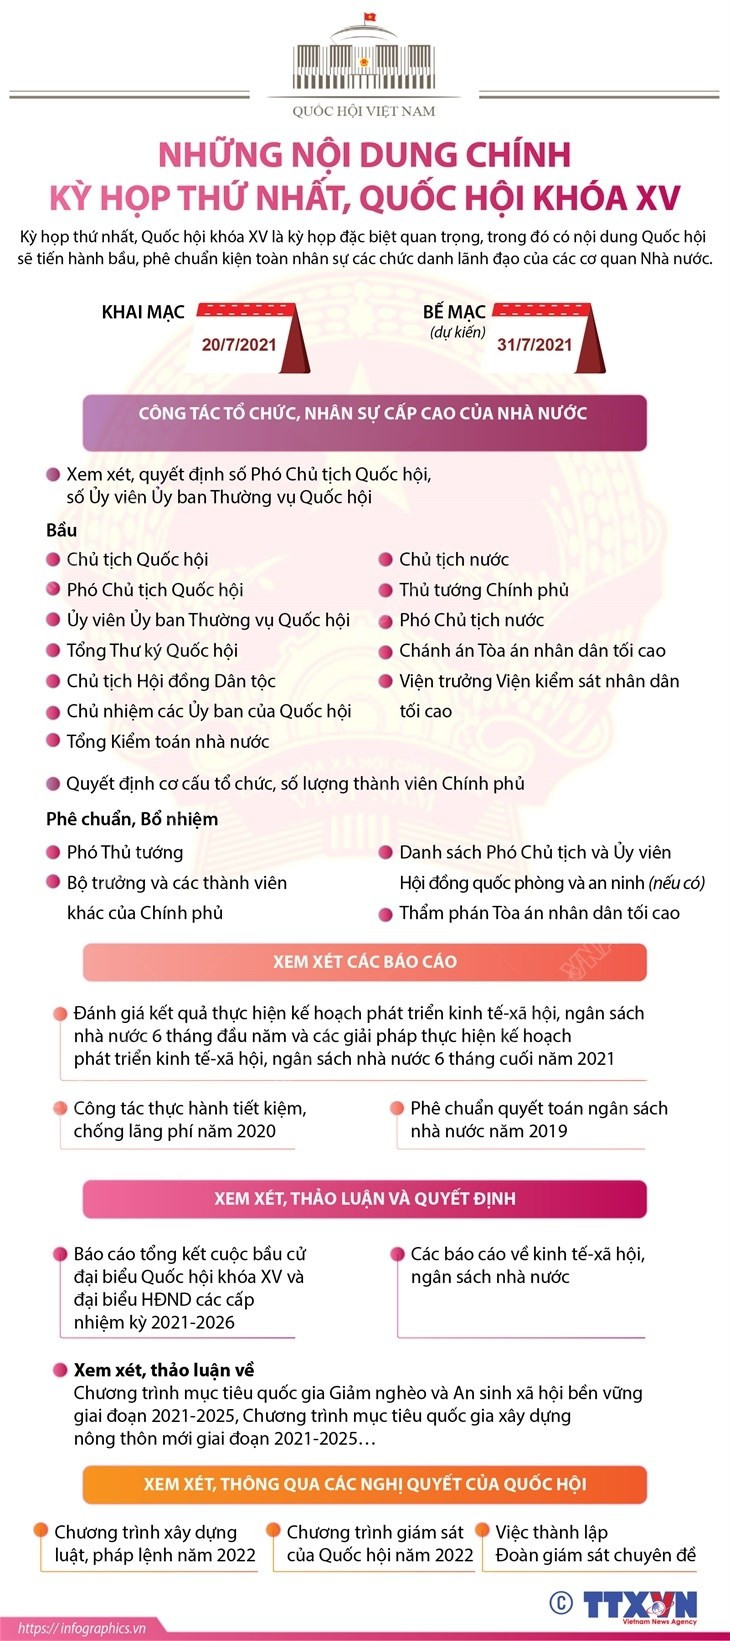 [Infographics] Noi dung chinh cua Ky hop thu nhat, Quoc hoi khoa XV hinh anh 1